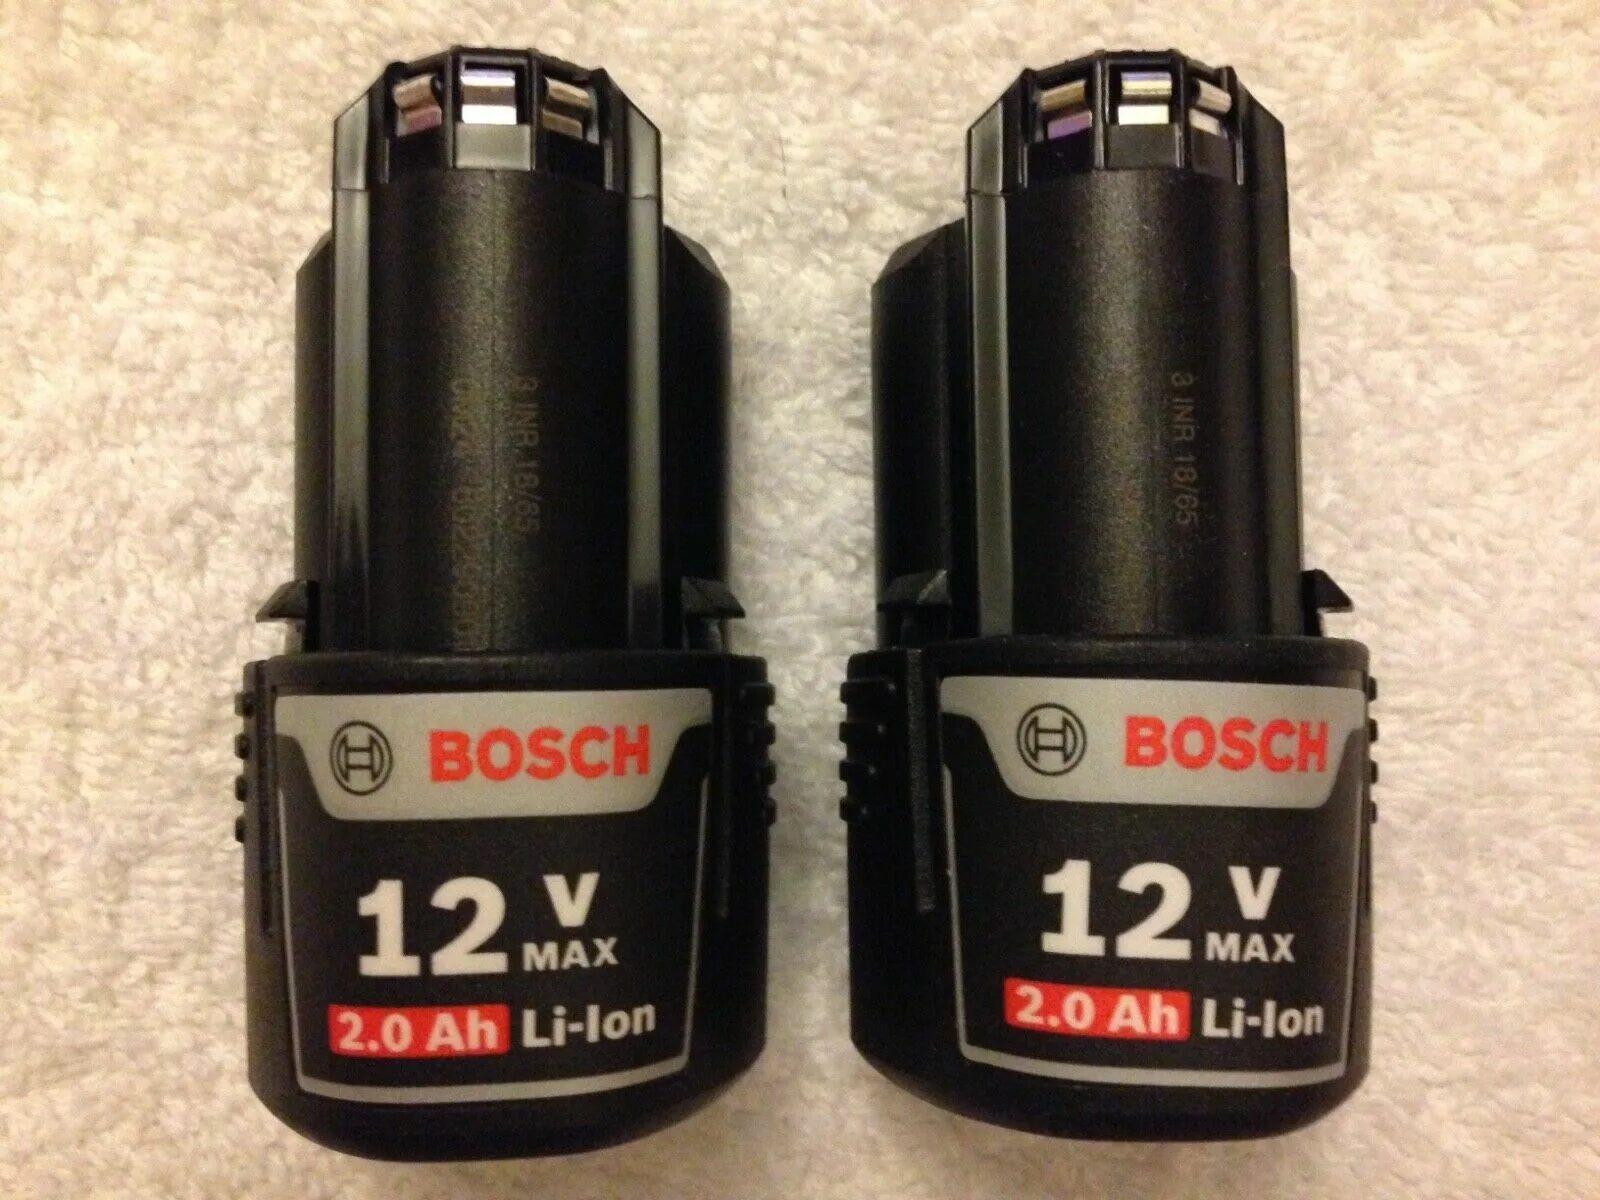 Купить аккумулятор бош 12. Аккумулятор Bosch 12v 2.0Ah. Аккумулятор Bosch 12v 1.5Ah. Аккумулятор Bosch 12v. Аккумуляторный Bosch 12v.